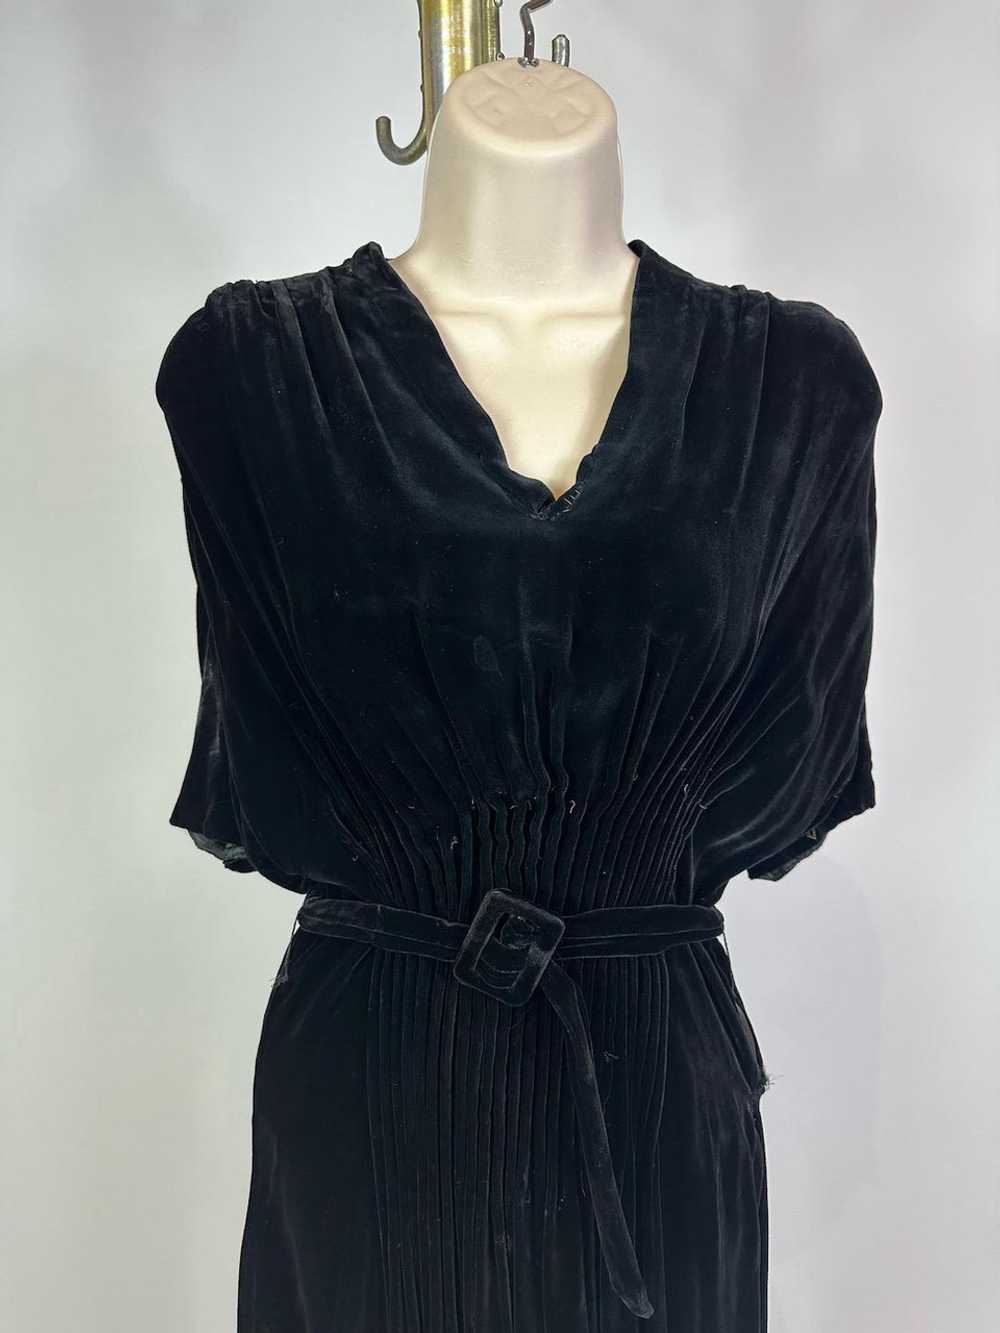 1930s - 1940s Black Silk Velvet Pintucked Dress - image 2